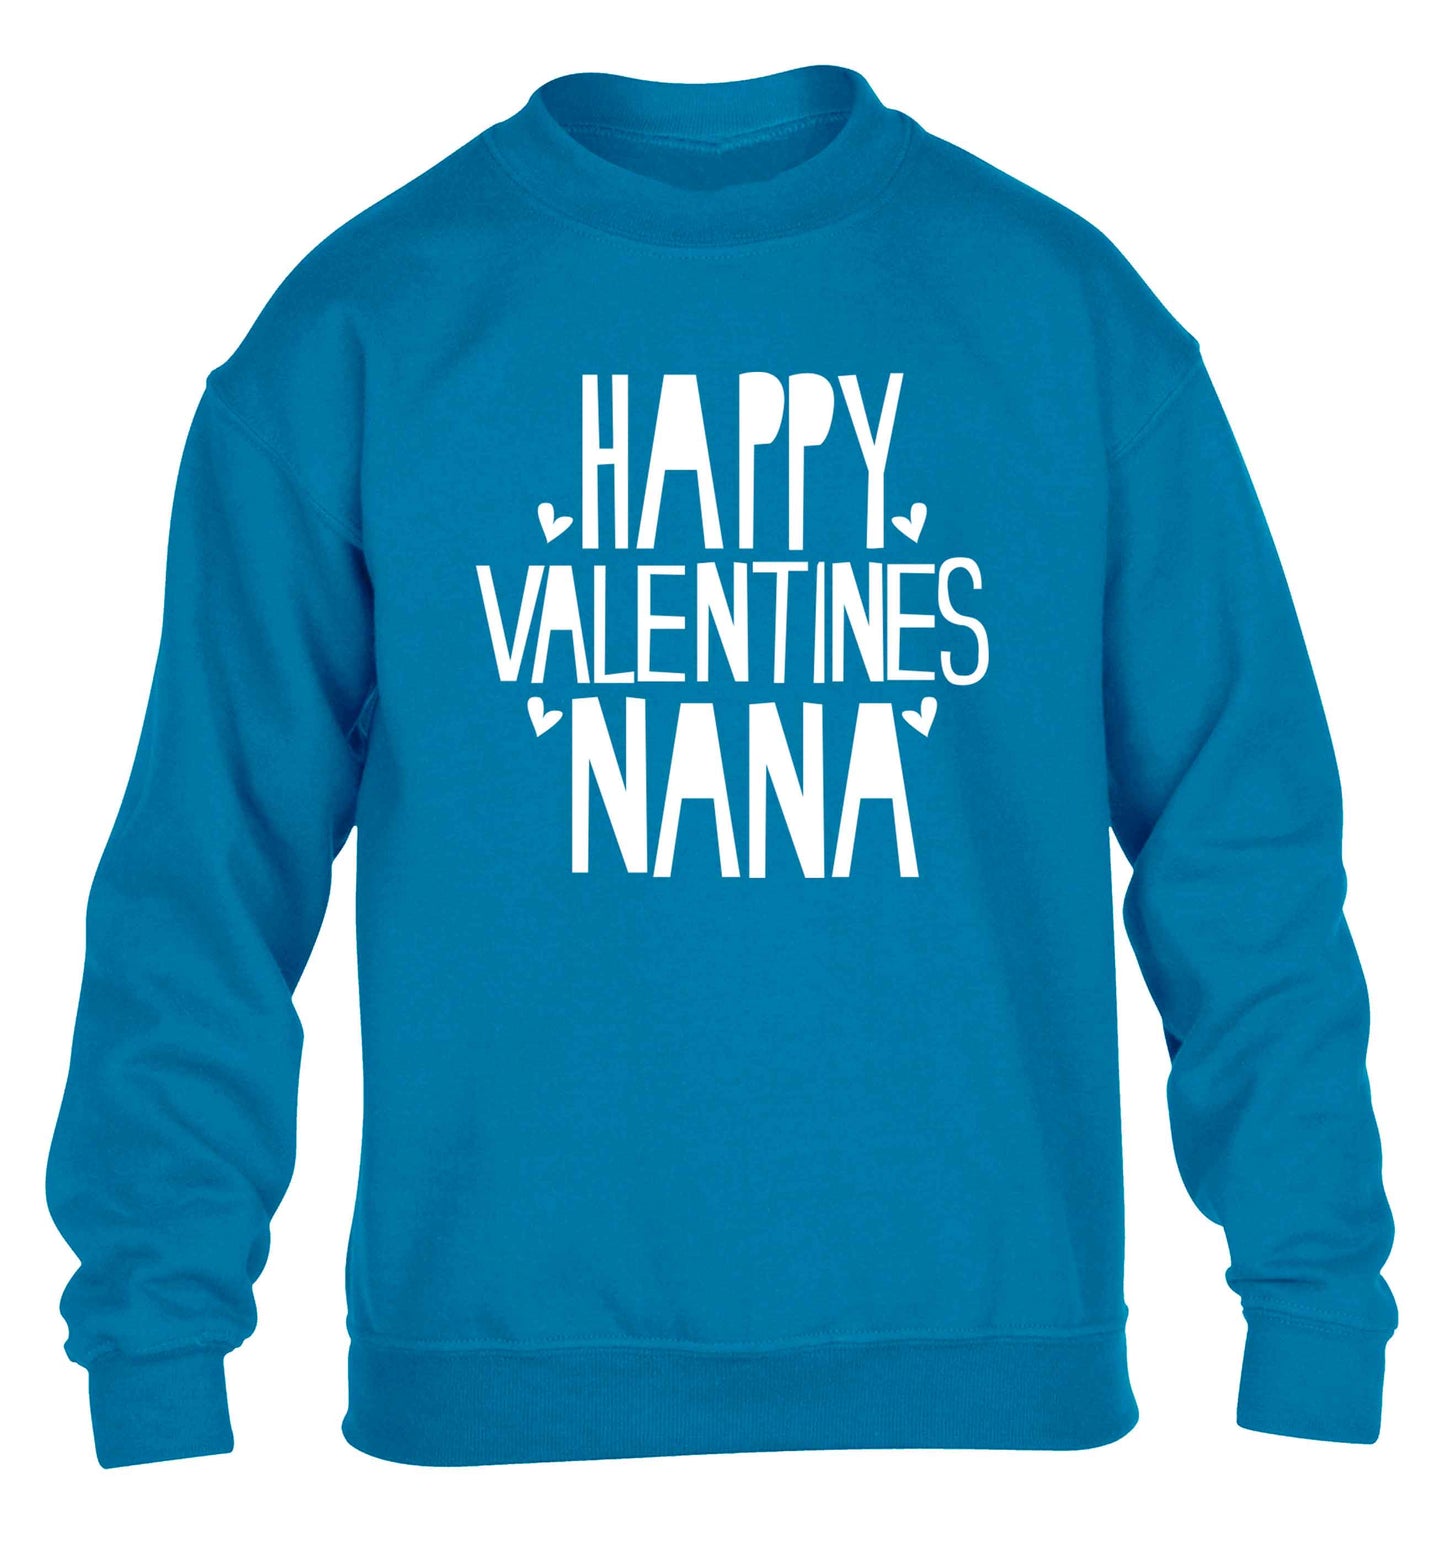 Happy valentines nana children's blue sweater 12-13 Years